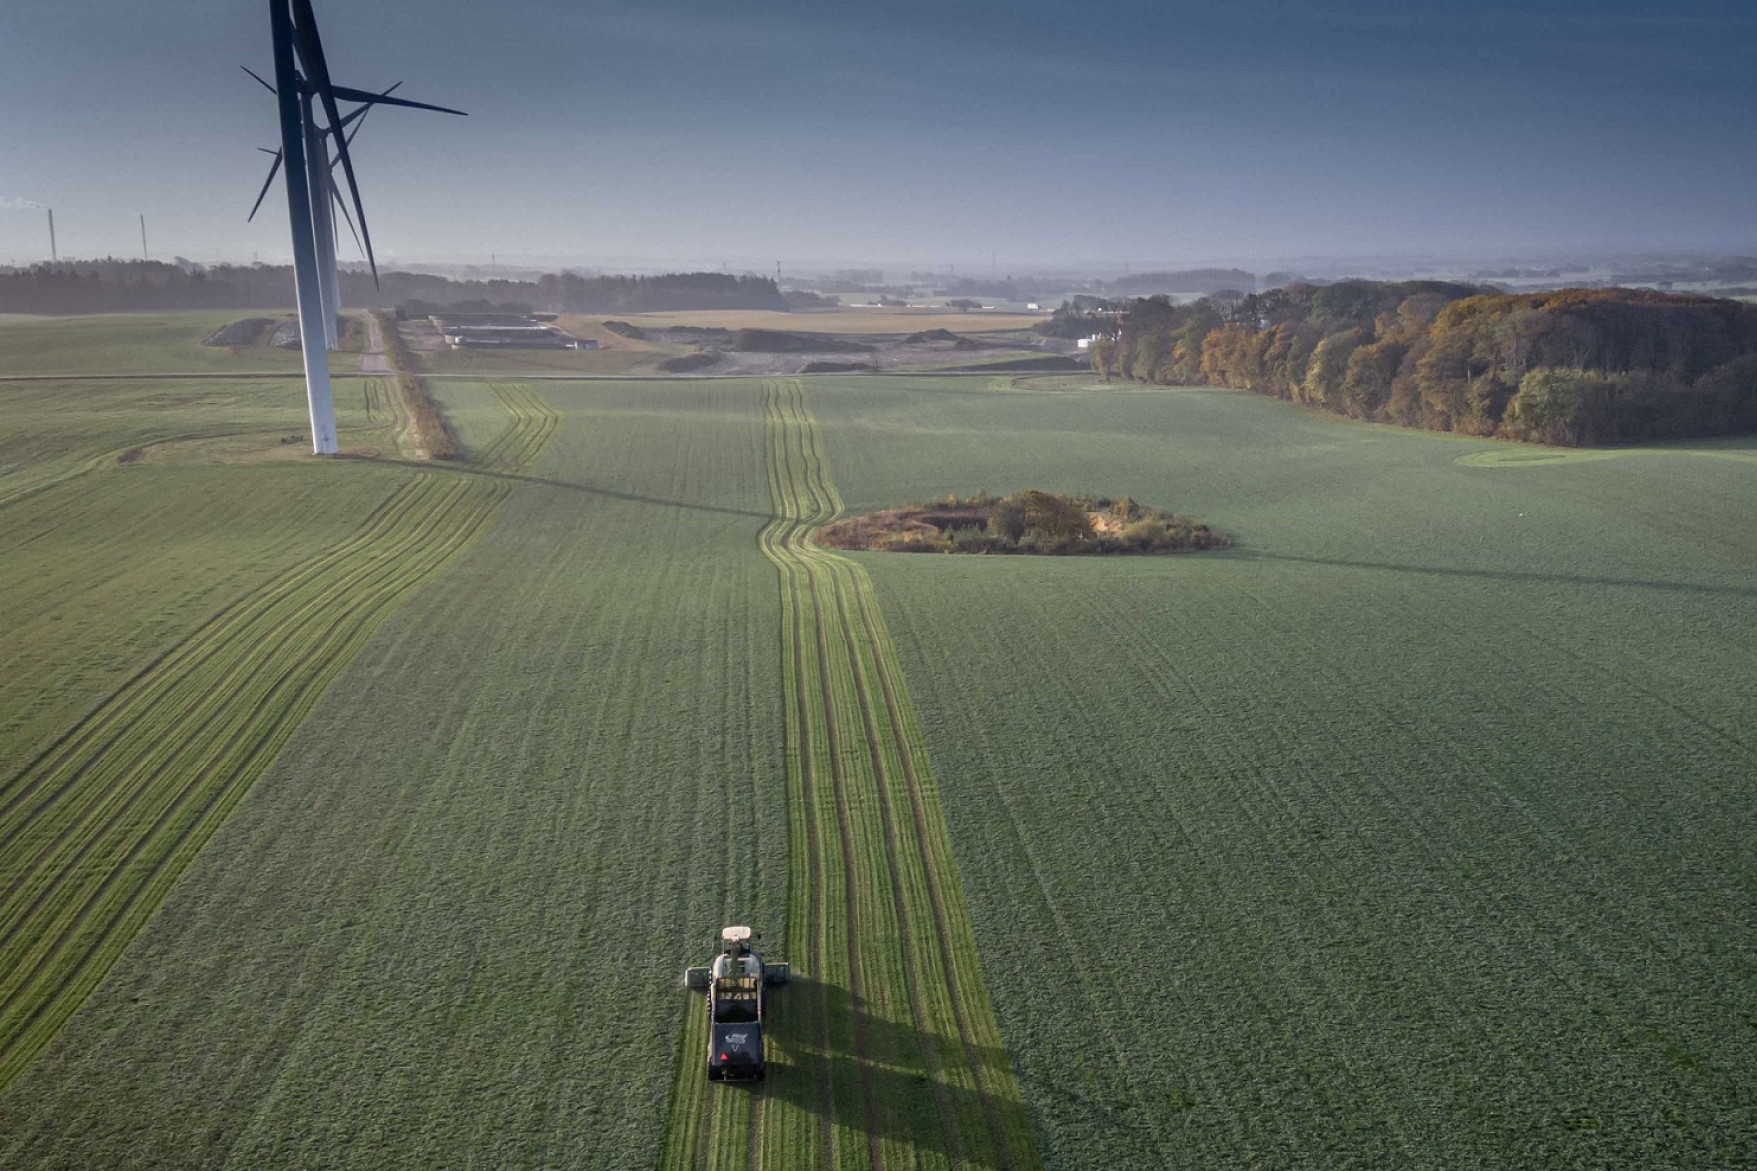 Dronefoto af en traktor, der kører over en græsmark